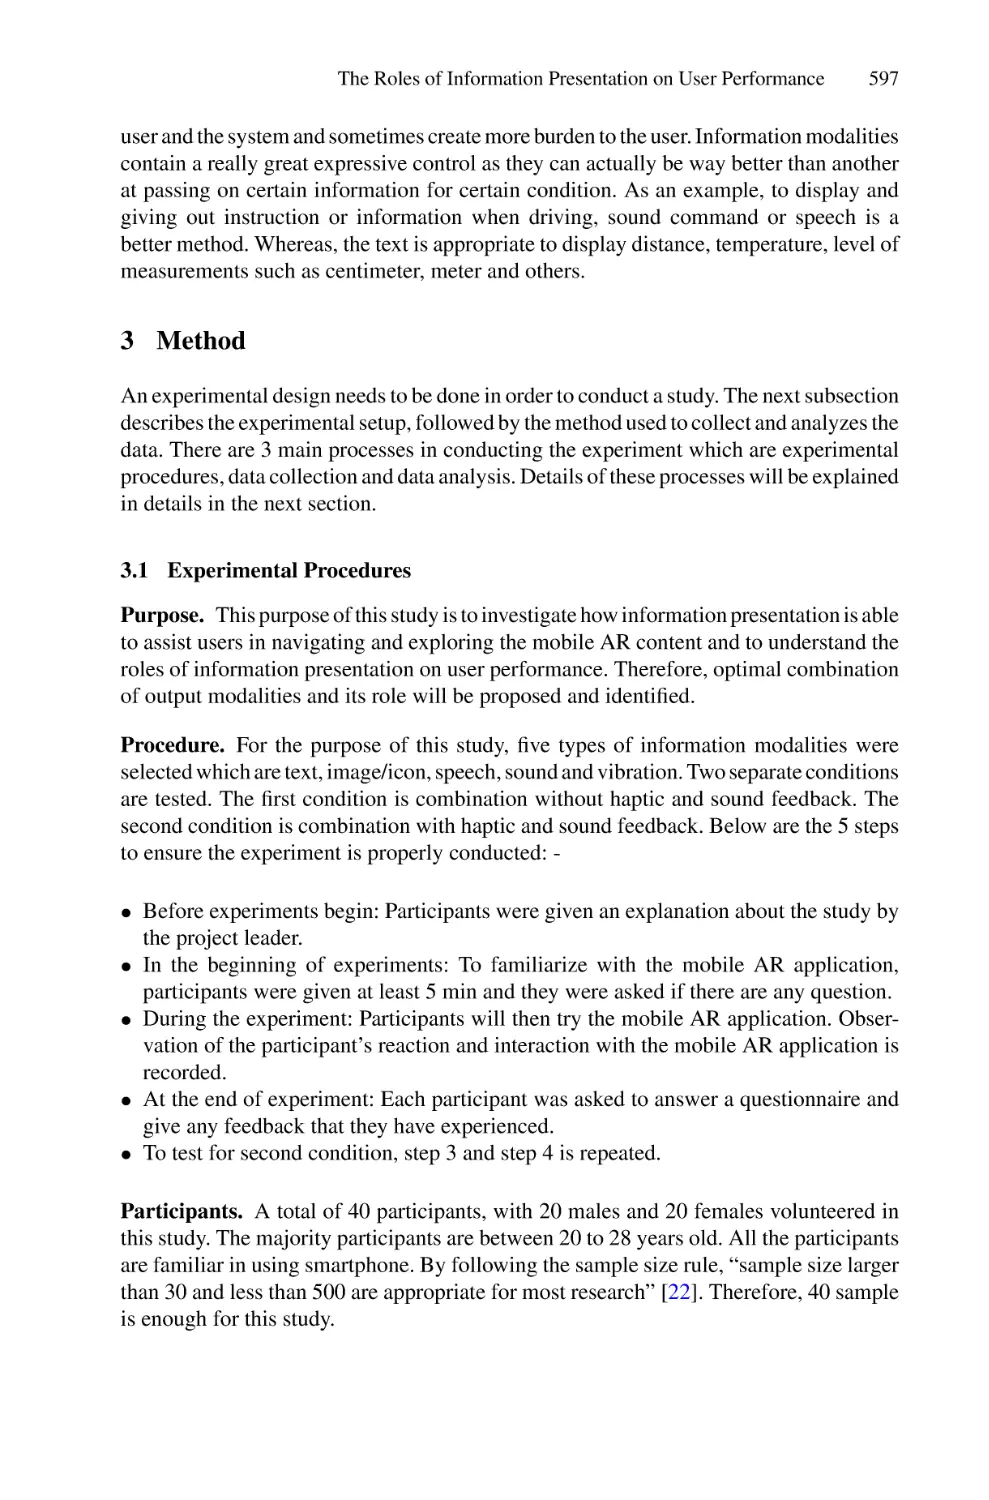 3 Method
3.1 Experimental Procedures